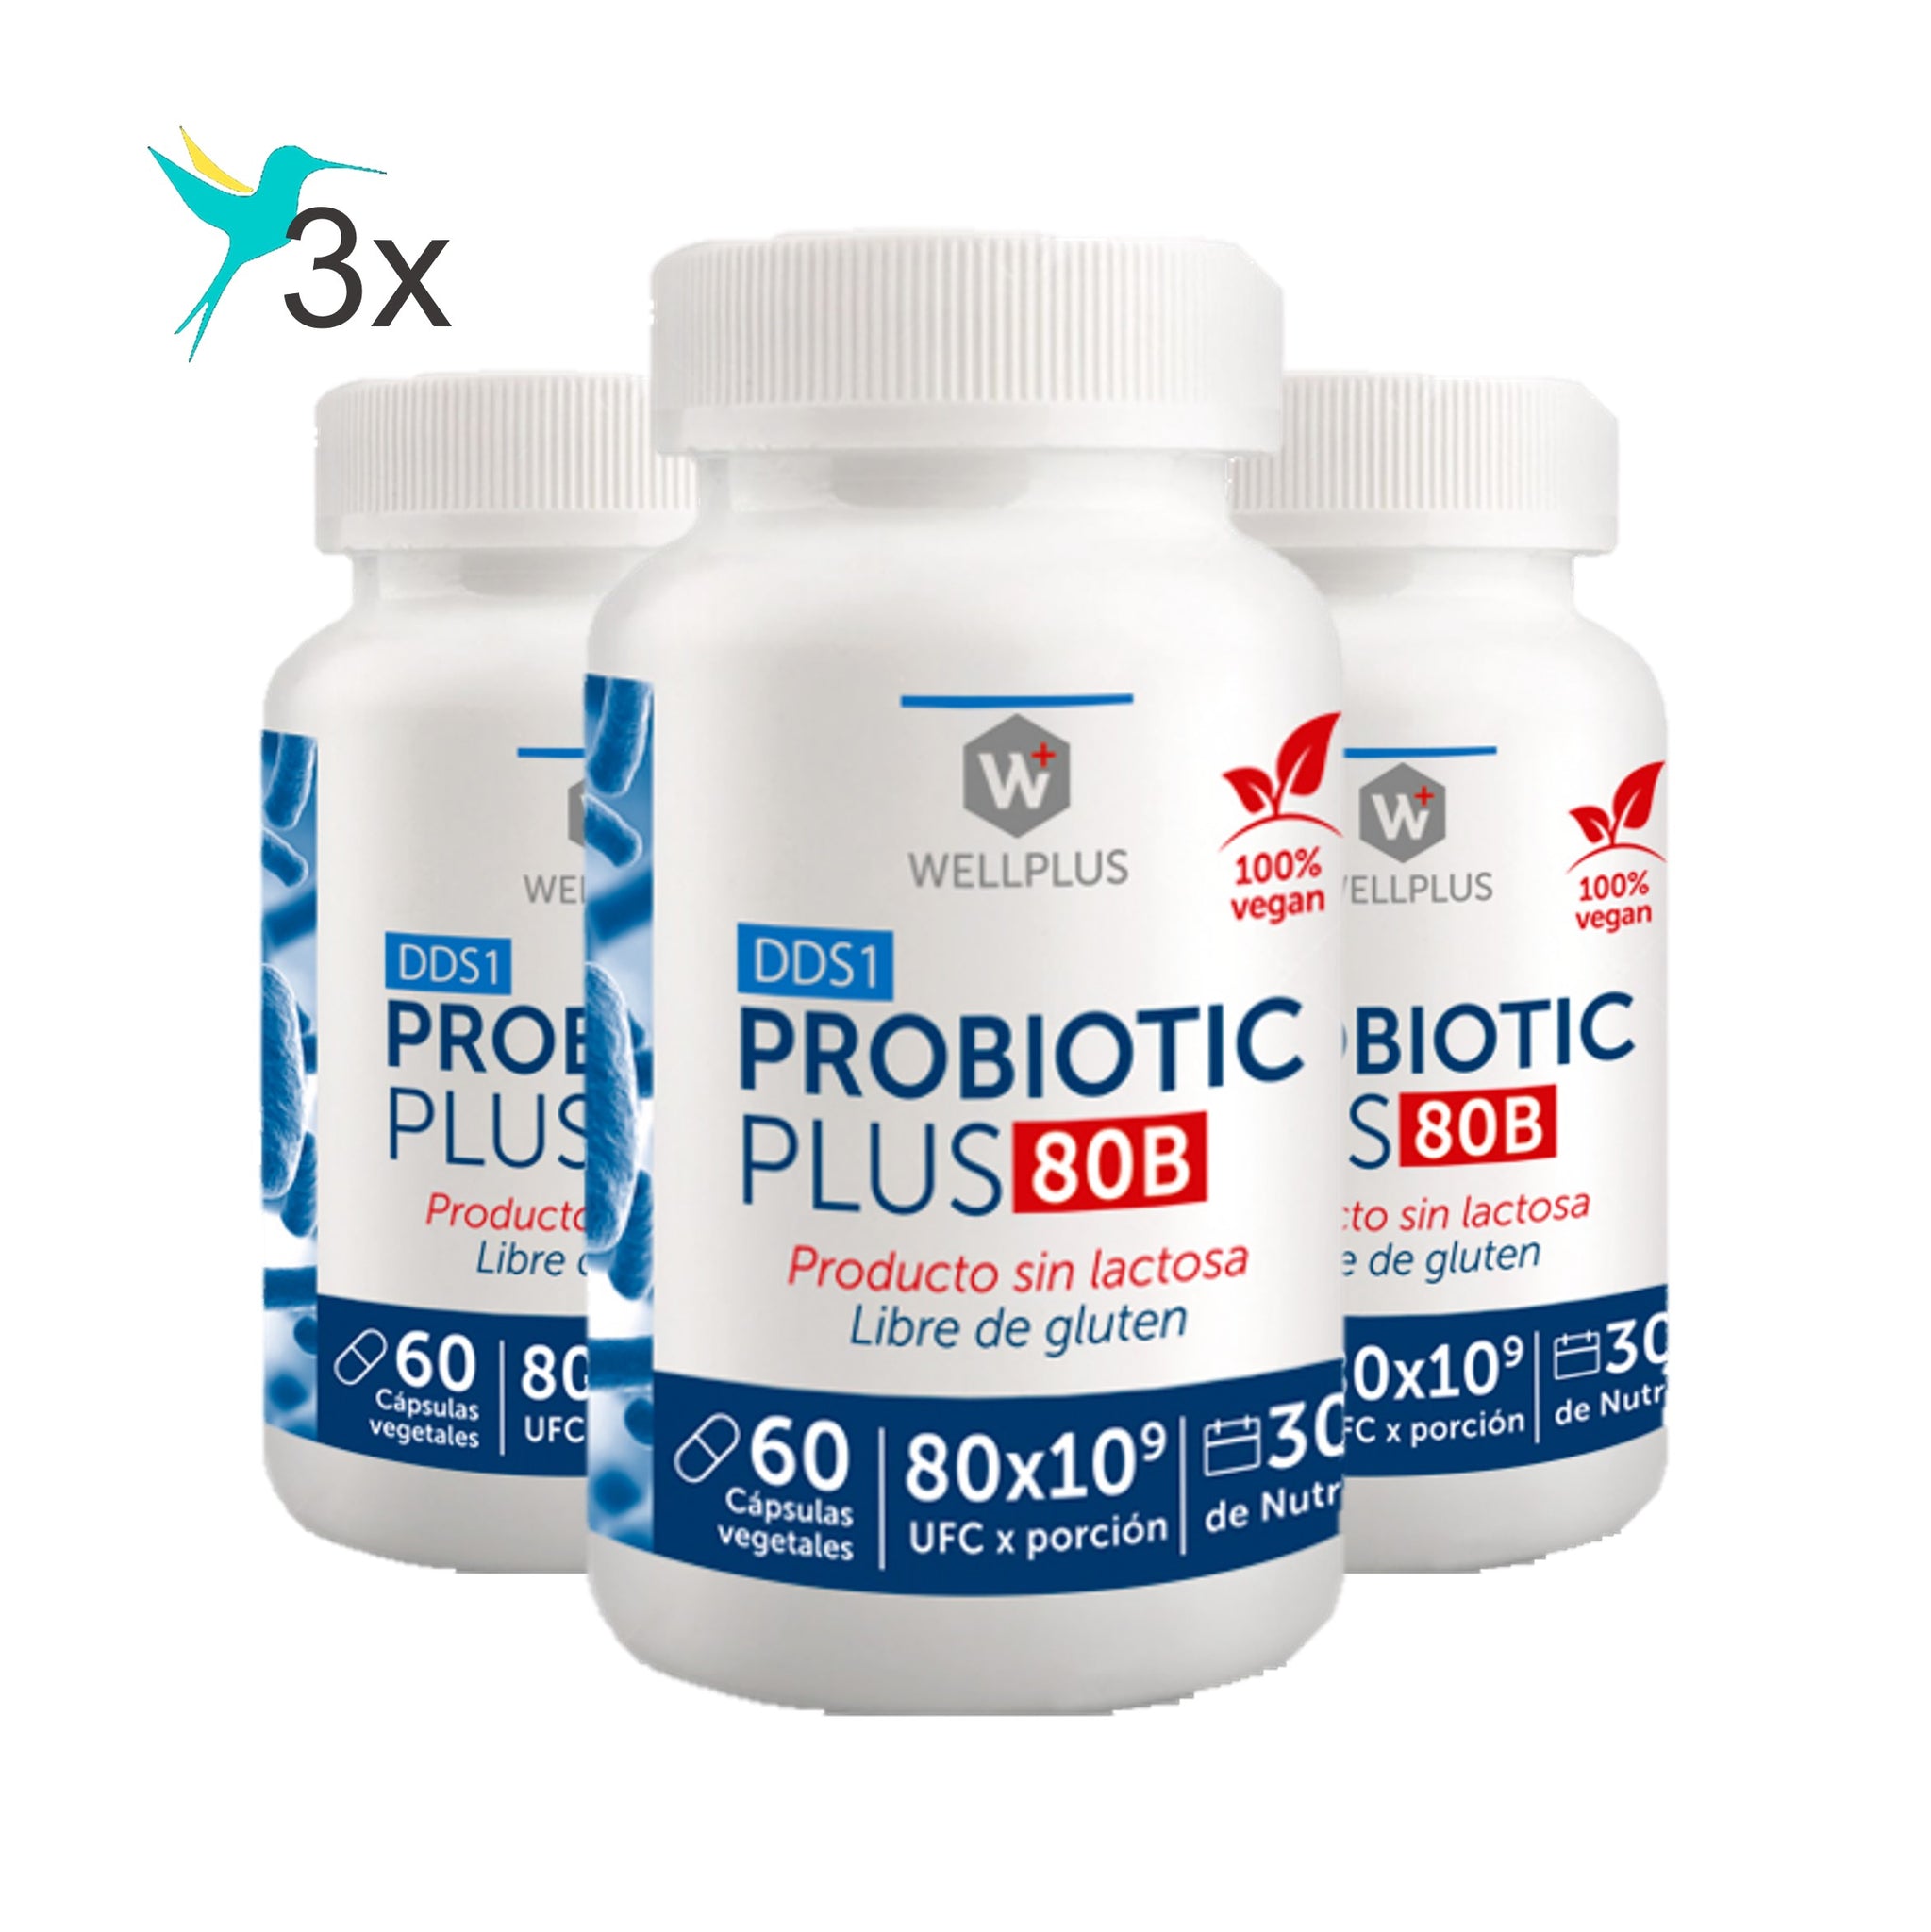 3 x Probiotic Plus 80 B, 3 x 60 capsulas